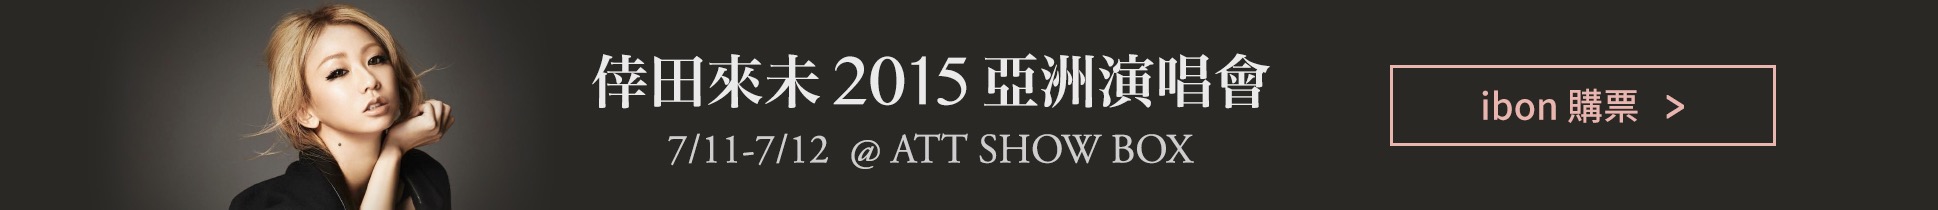 倖田來未 2015 亞洲演唱會門票熱烈搶購中，請洽全台 ibon 售票系統